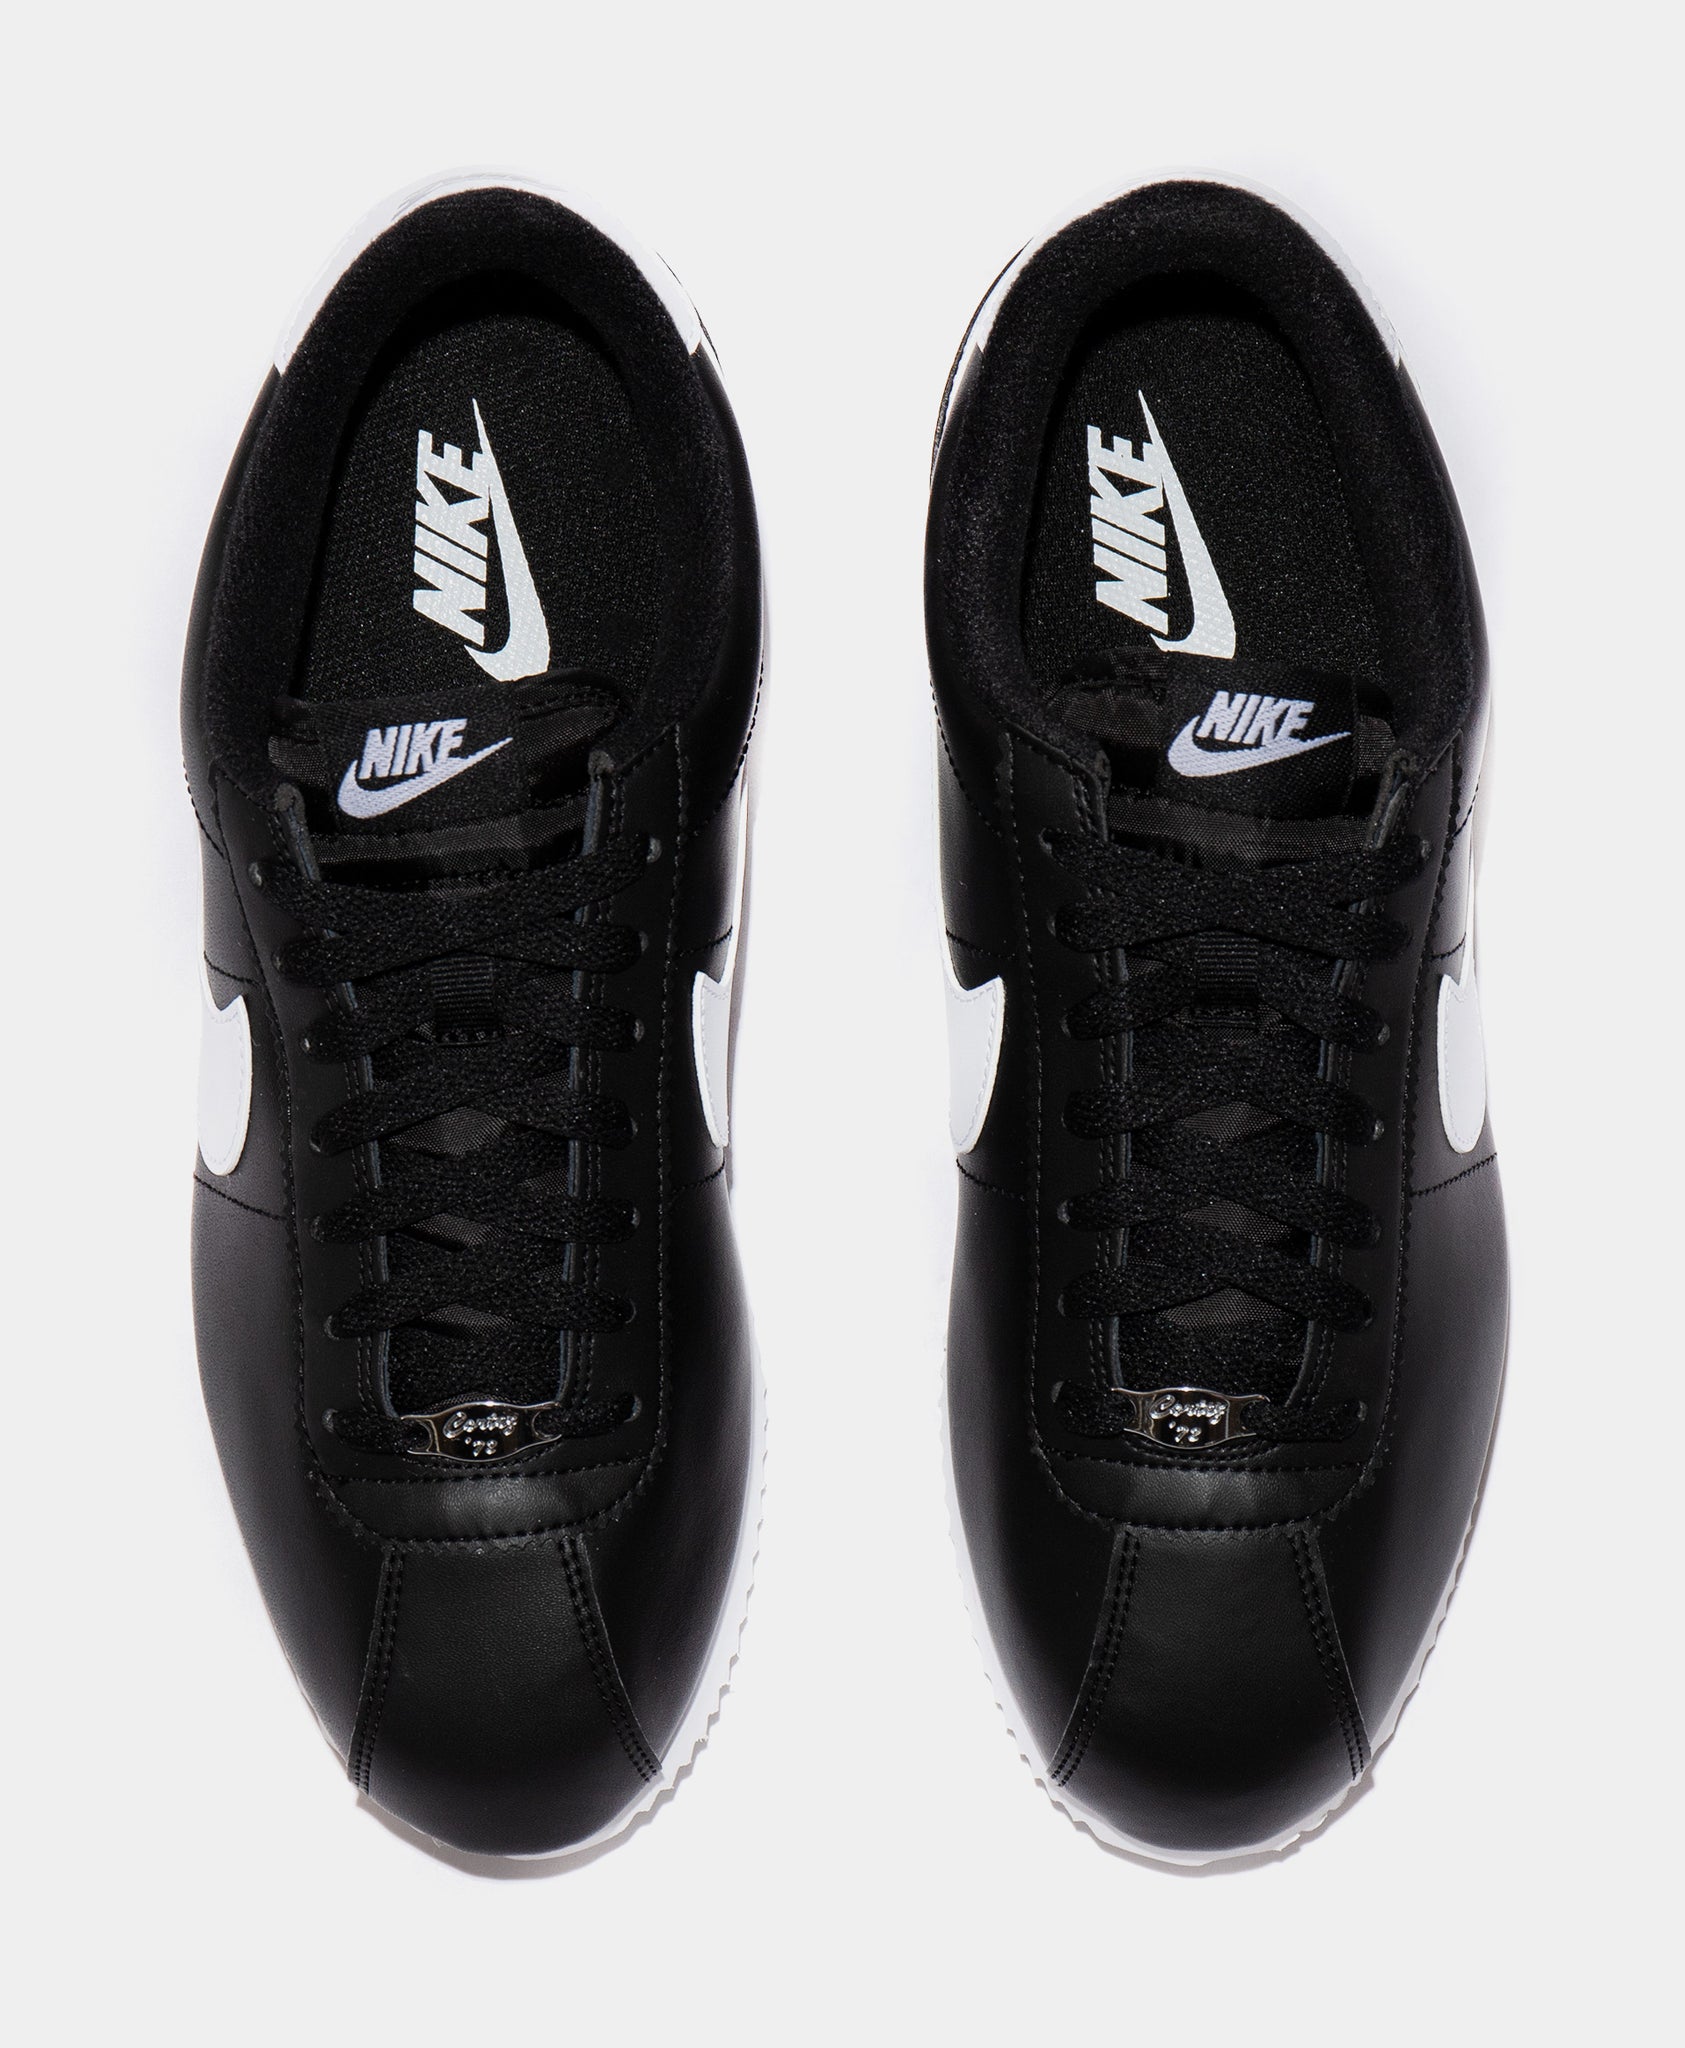 Nike Cortez Basic Leather Mens Lifestyle Shoe Black White 819719